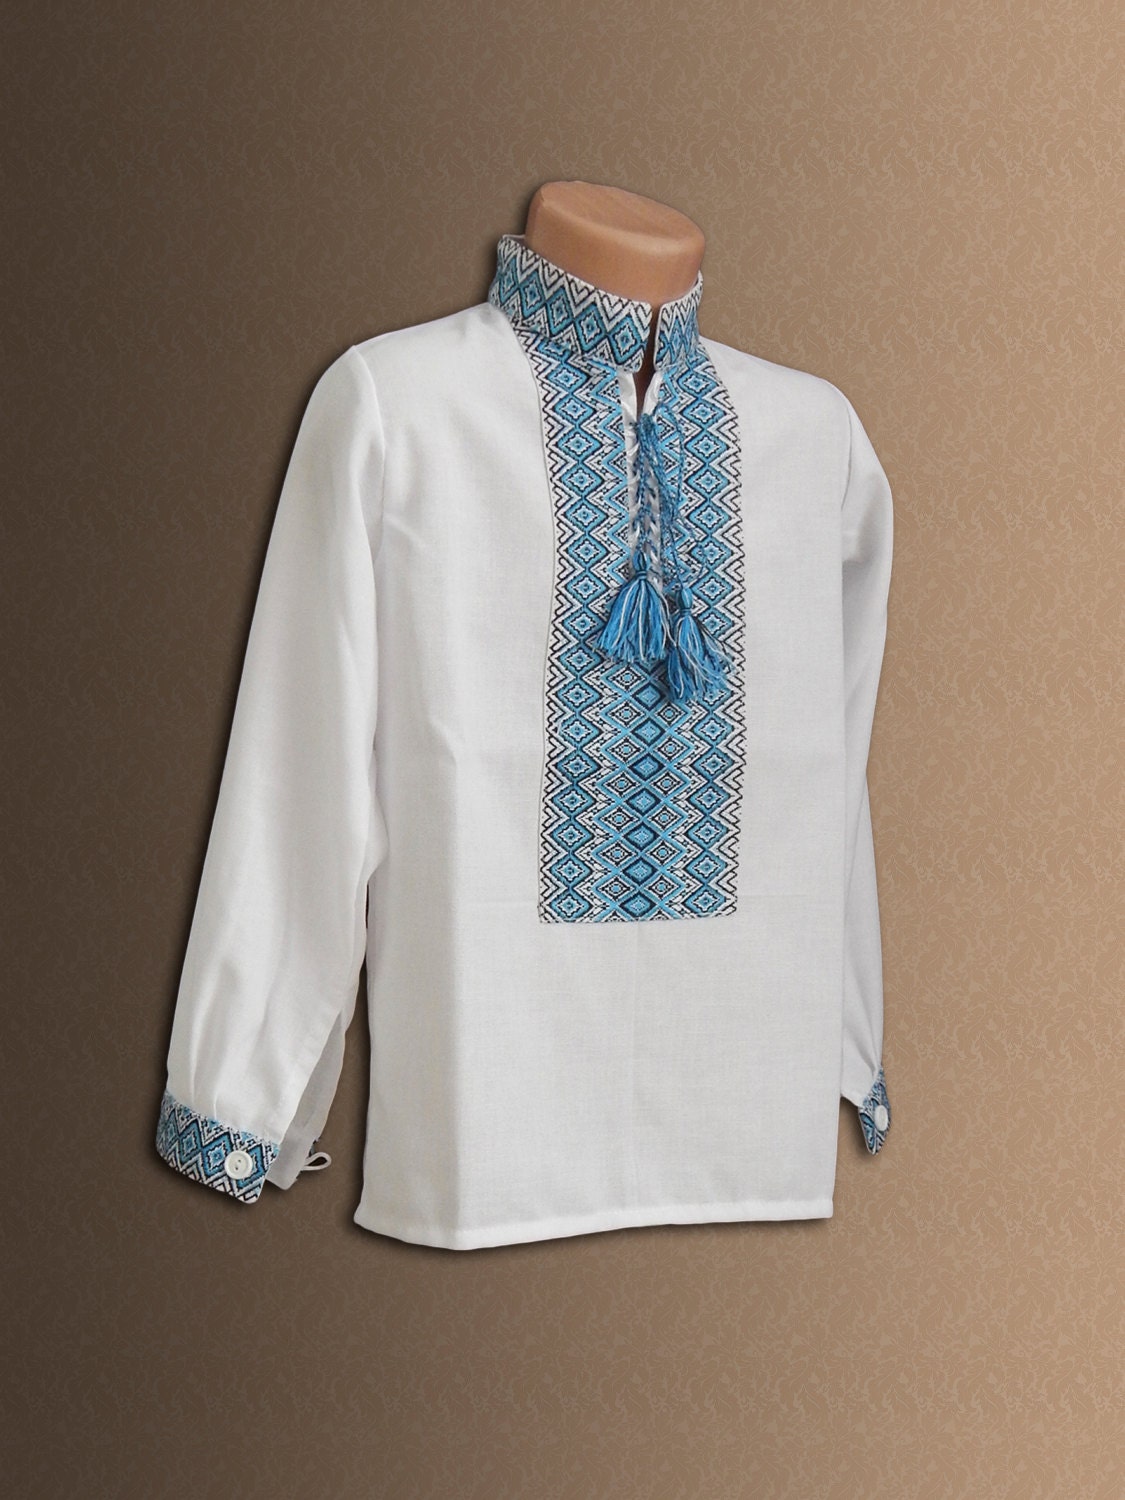 Ukrainian Embroidery Vyshyvanka Ethnic Shirt Linen Shirt | Etsy